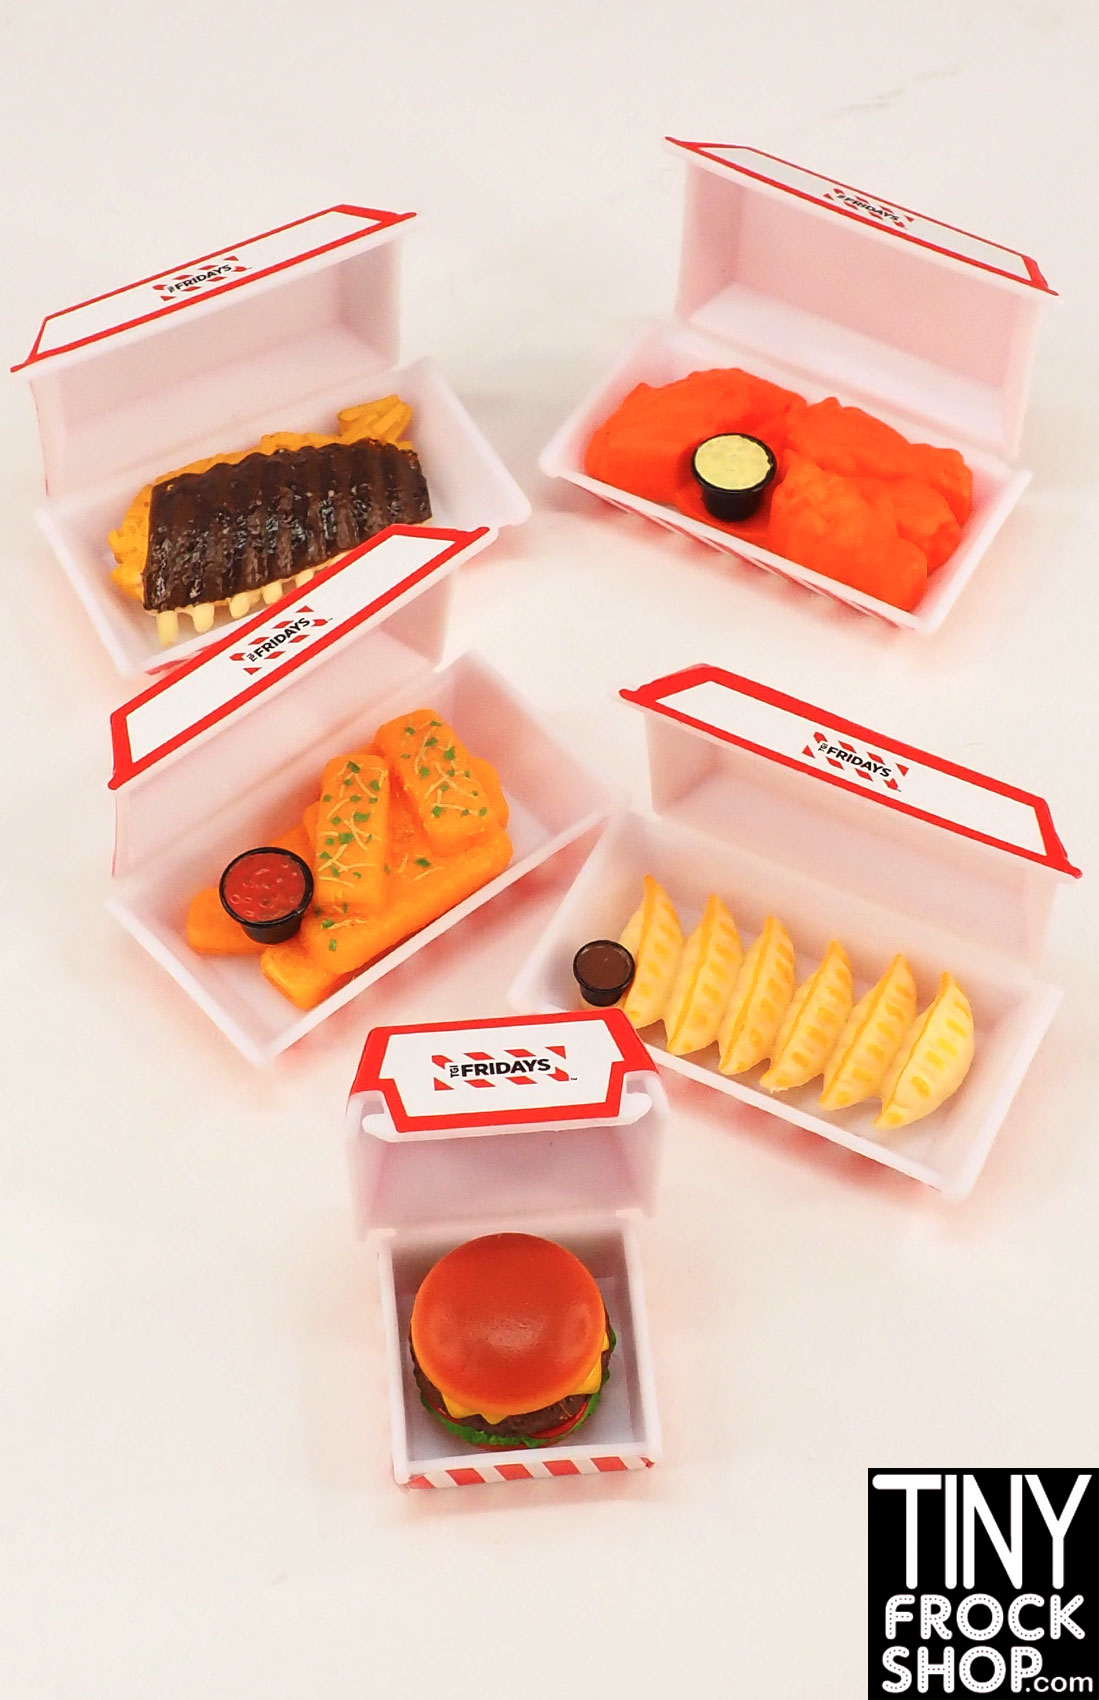 Tiny Frock Shop Zuru Mini Brands Foodies TGI Fridays Foods in